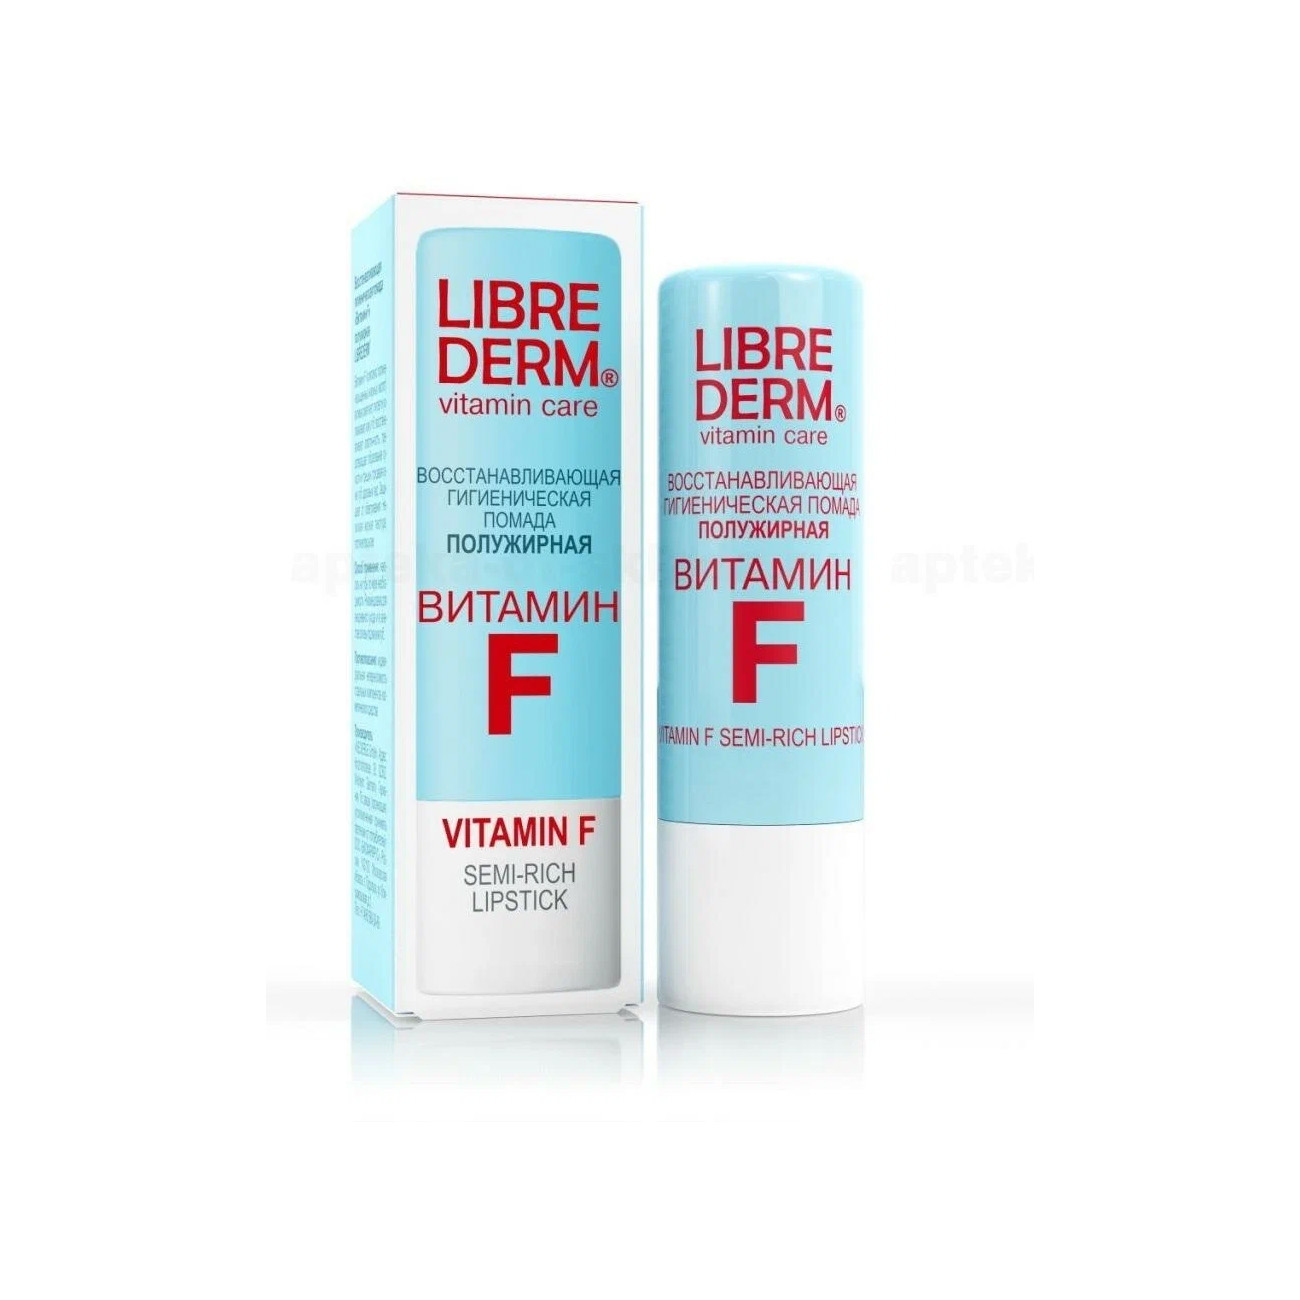 Восстанавливающая гигиеническая помада для губ полужирная LIBREDERM Витамин F 4 г librederm vitamin f rich lipstick помада гигиеническая восстанавливающая жирная 4 г